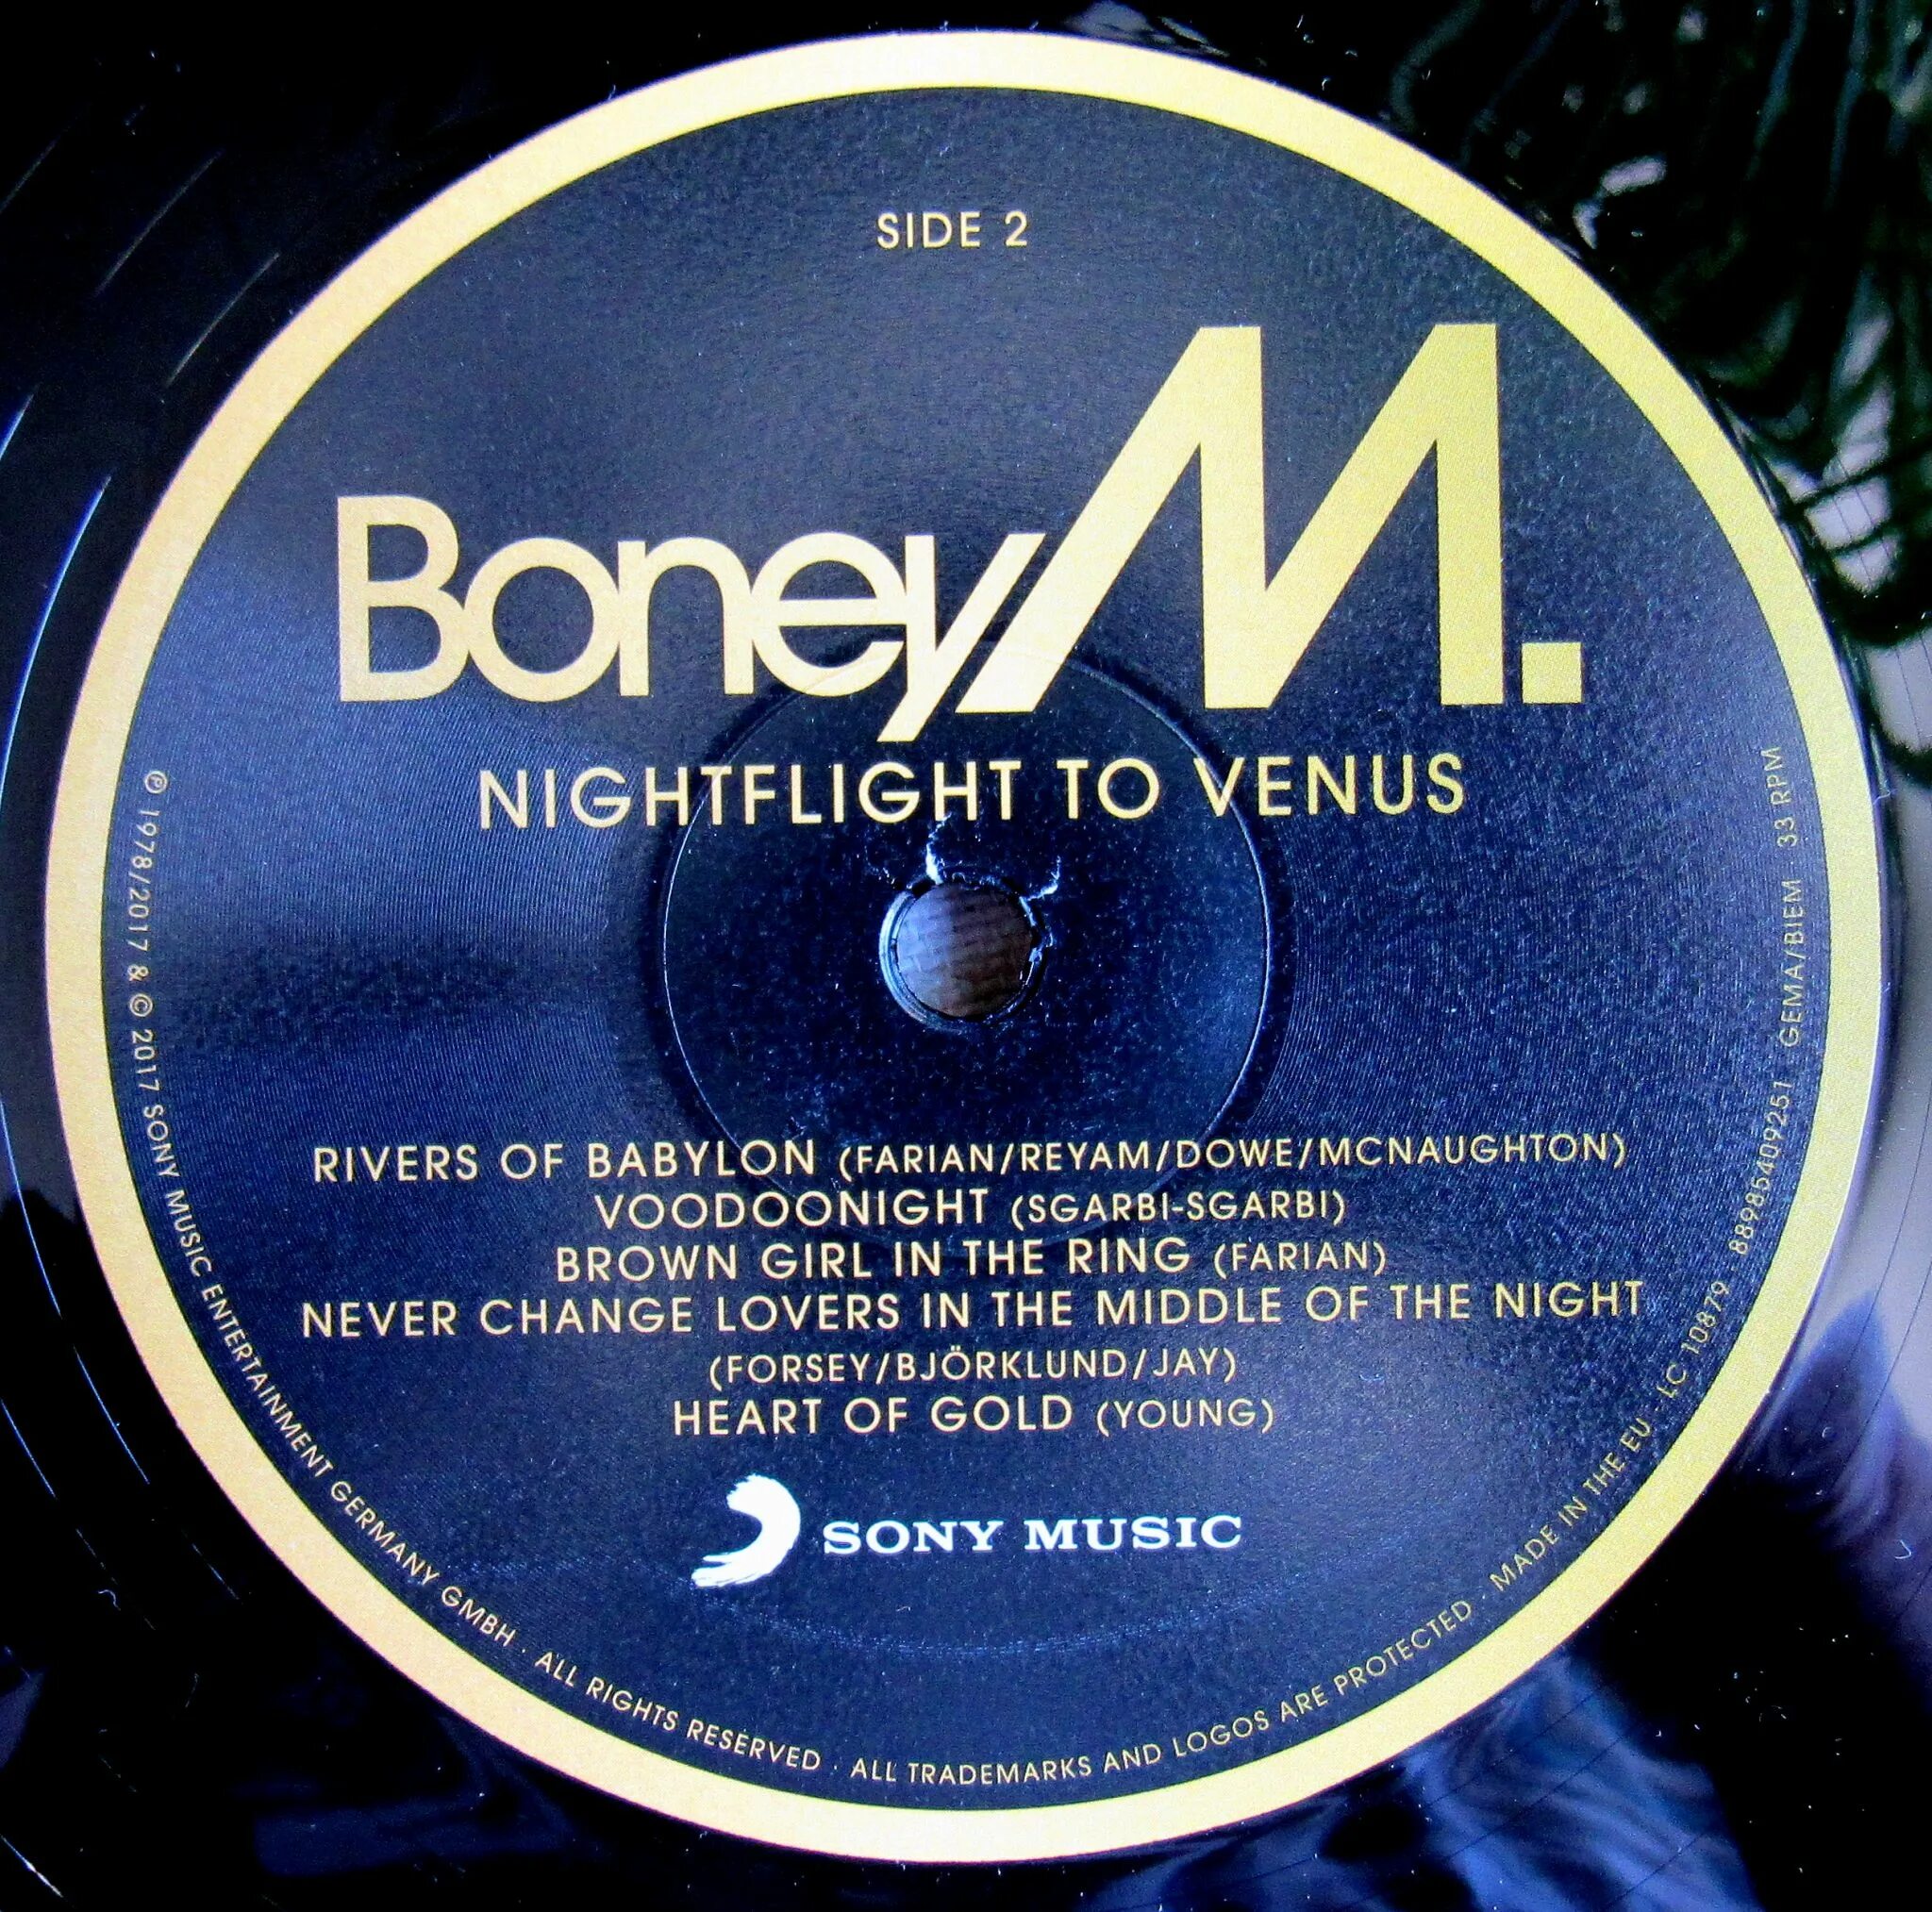 1978 - Nightflight to Venus. Пластинка Boney m Nightflight to Venus. Boney m Nightflight to Venus 1978. 0889854092511, Виниловая пластинка Boney m., Nightflight to Venus (0889854092511). Boney m venus